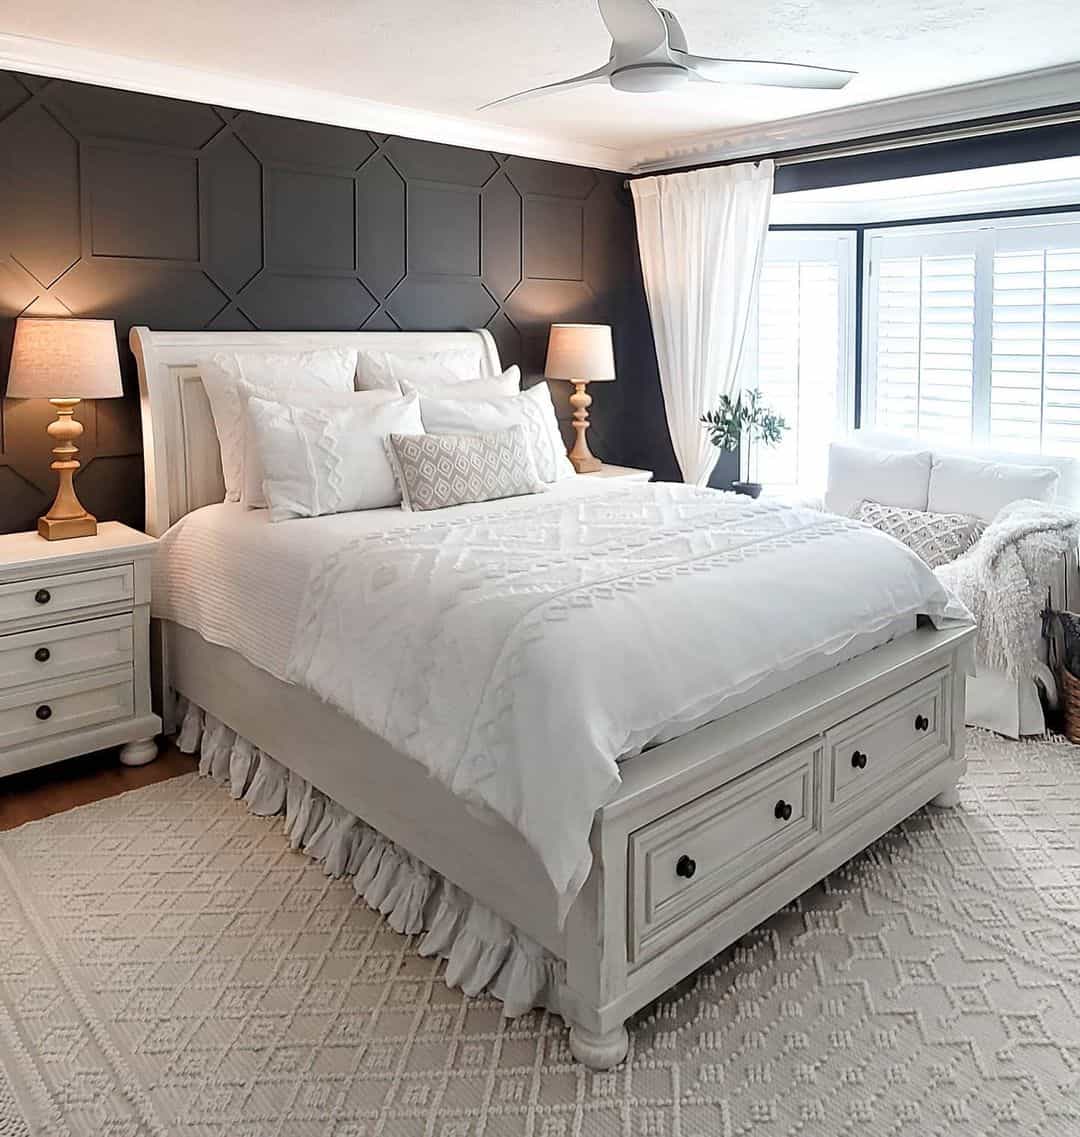 White Furniture Sets for a Black Bedroom - Soul & Lane